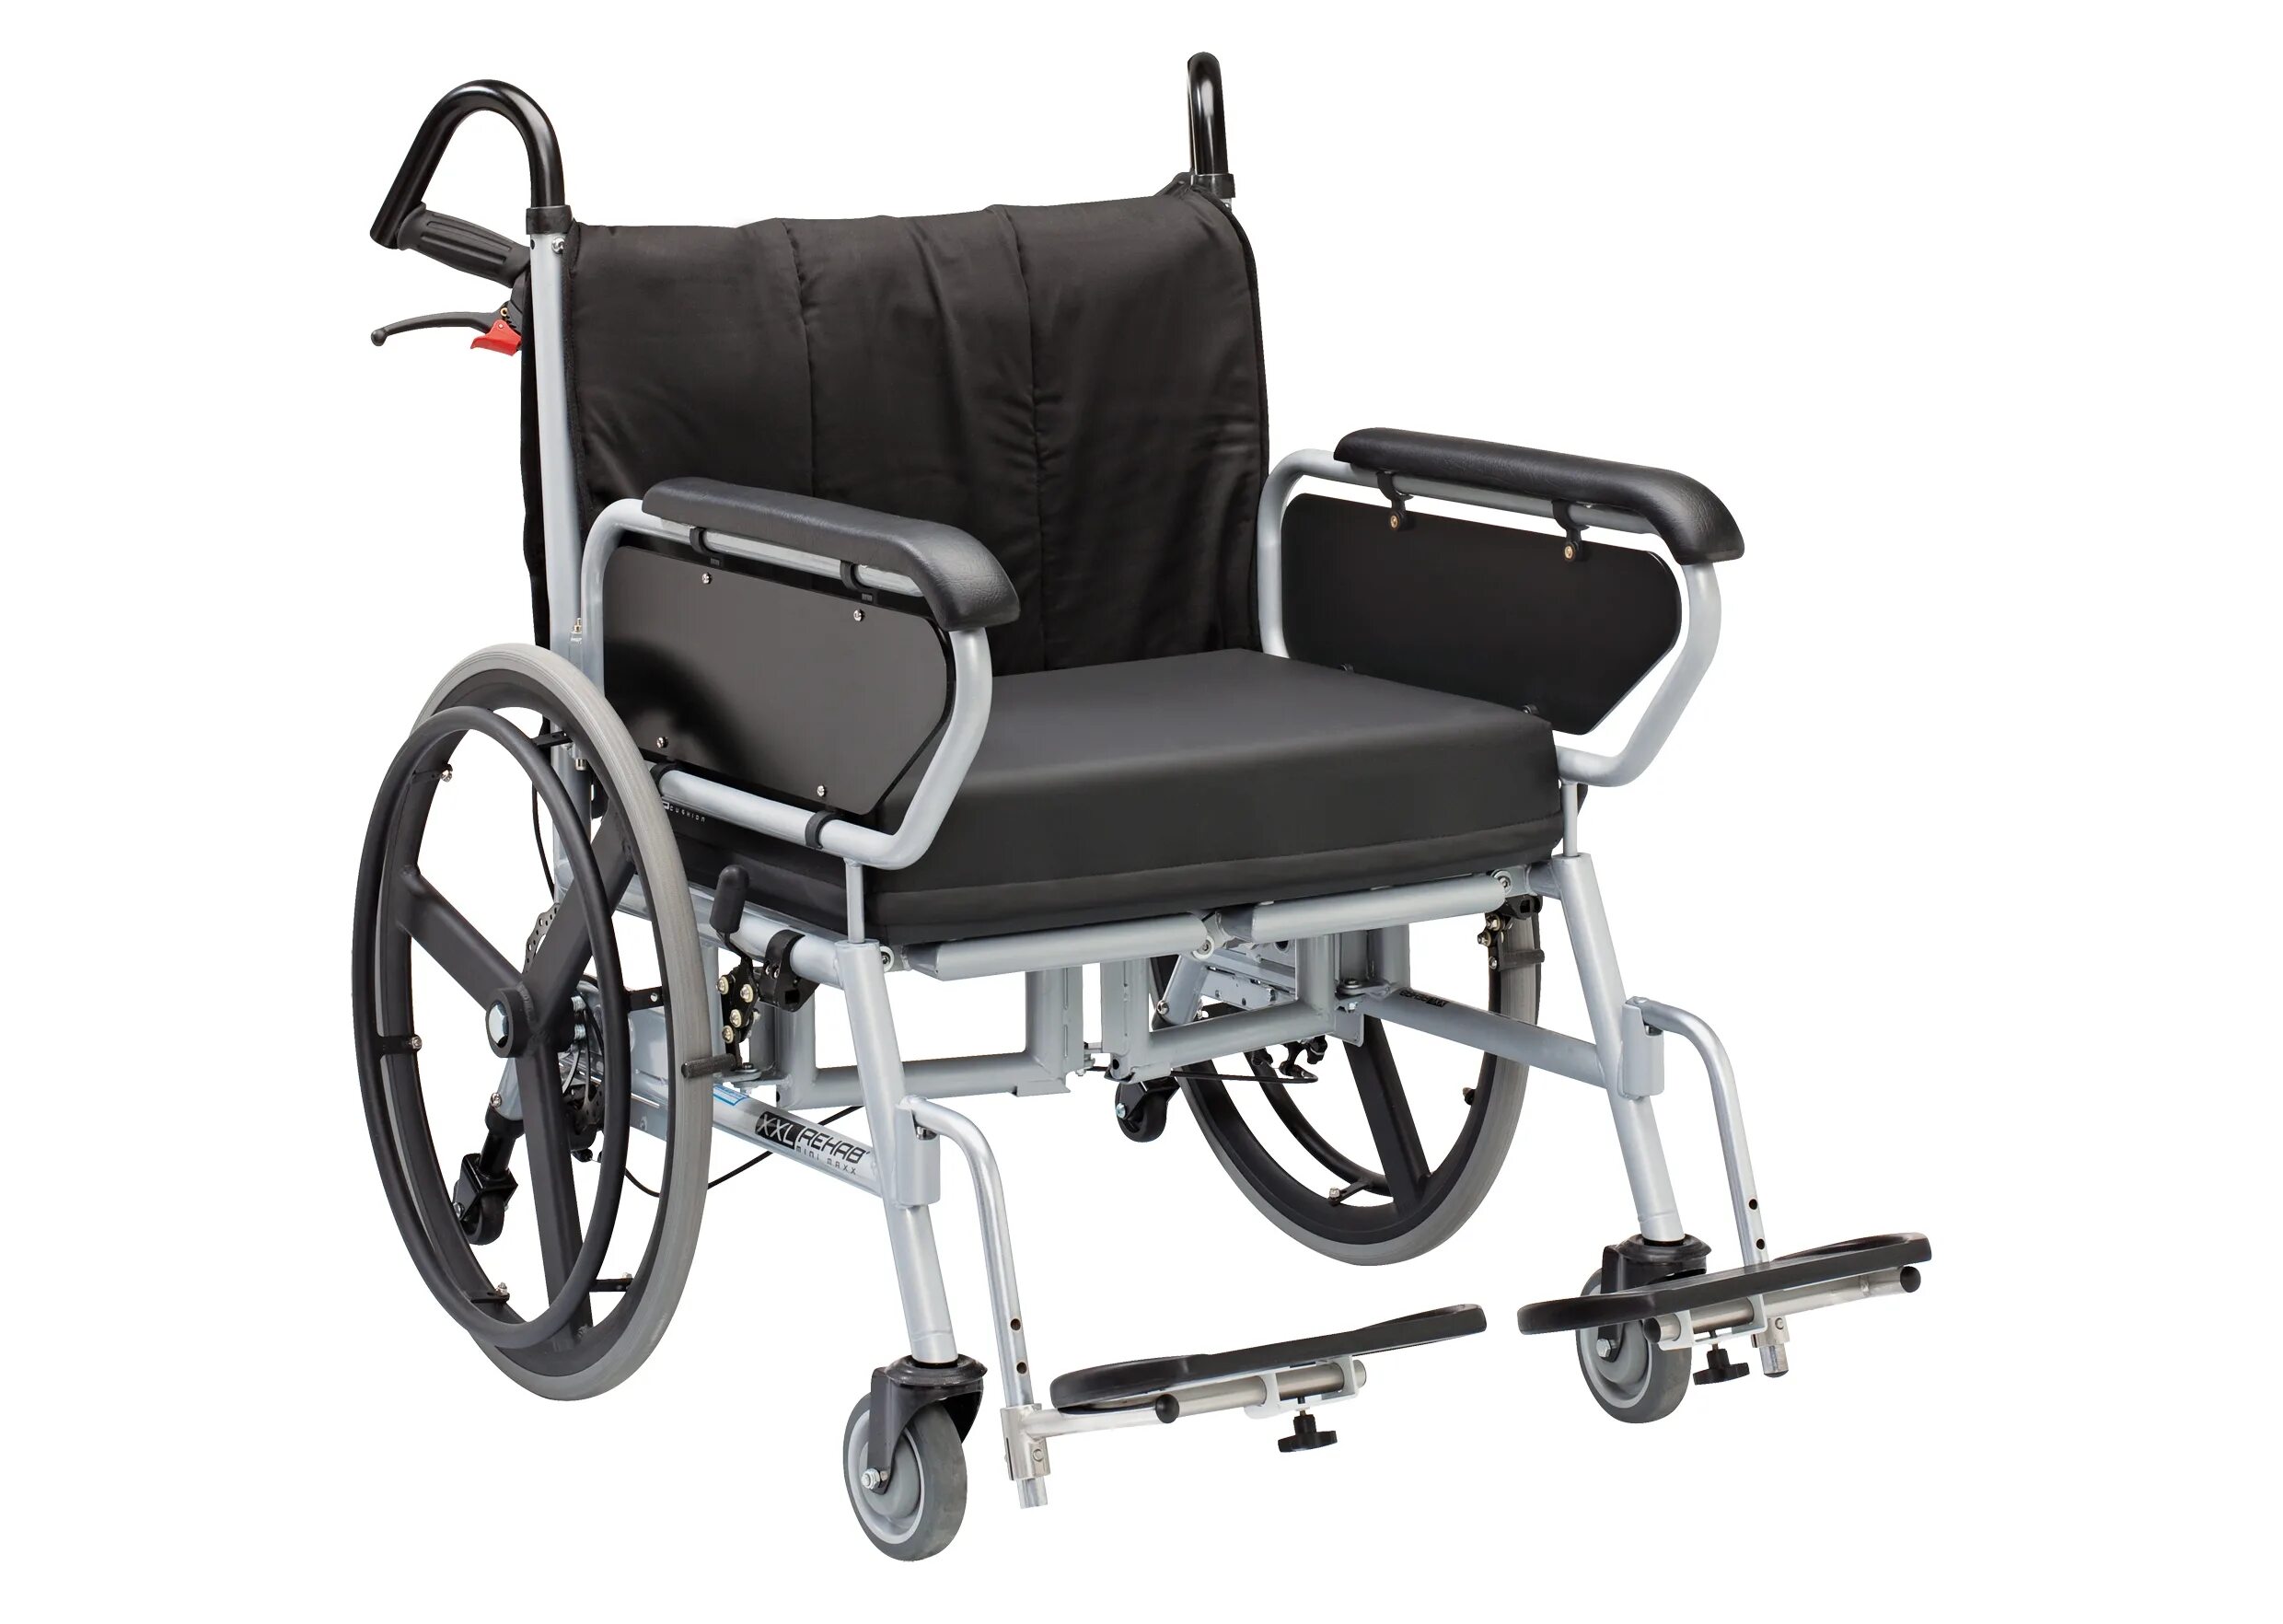 Где можно взять инвалидную коляску. Инвалидная коляска Breezy Premium ly 250. Кресло коляска Омега Люкс 200. Инвалидная коляска на 200 кг. Электроколяска для инвалидов 200 кг.